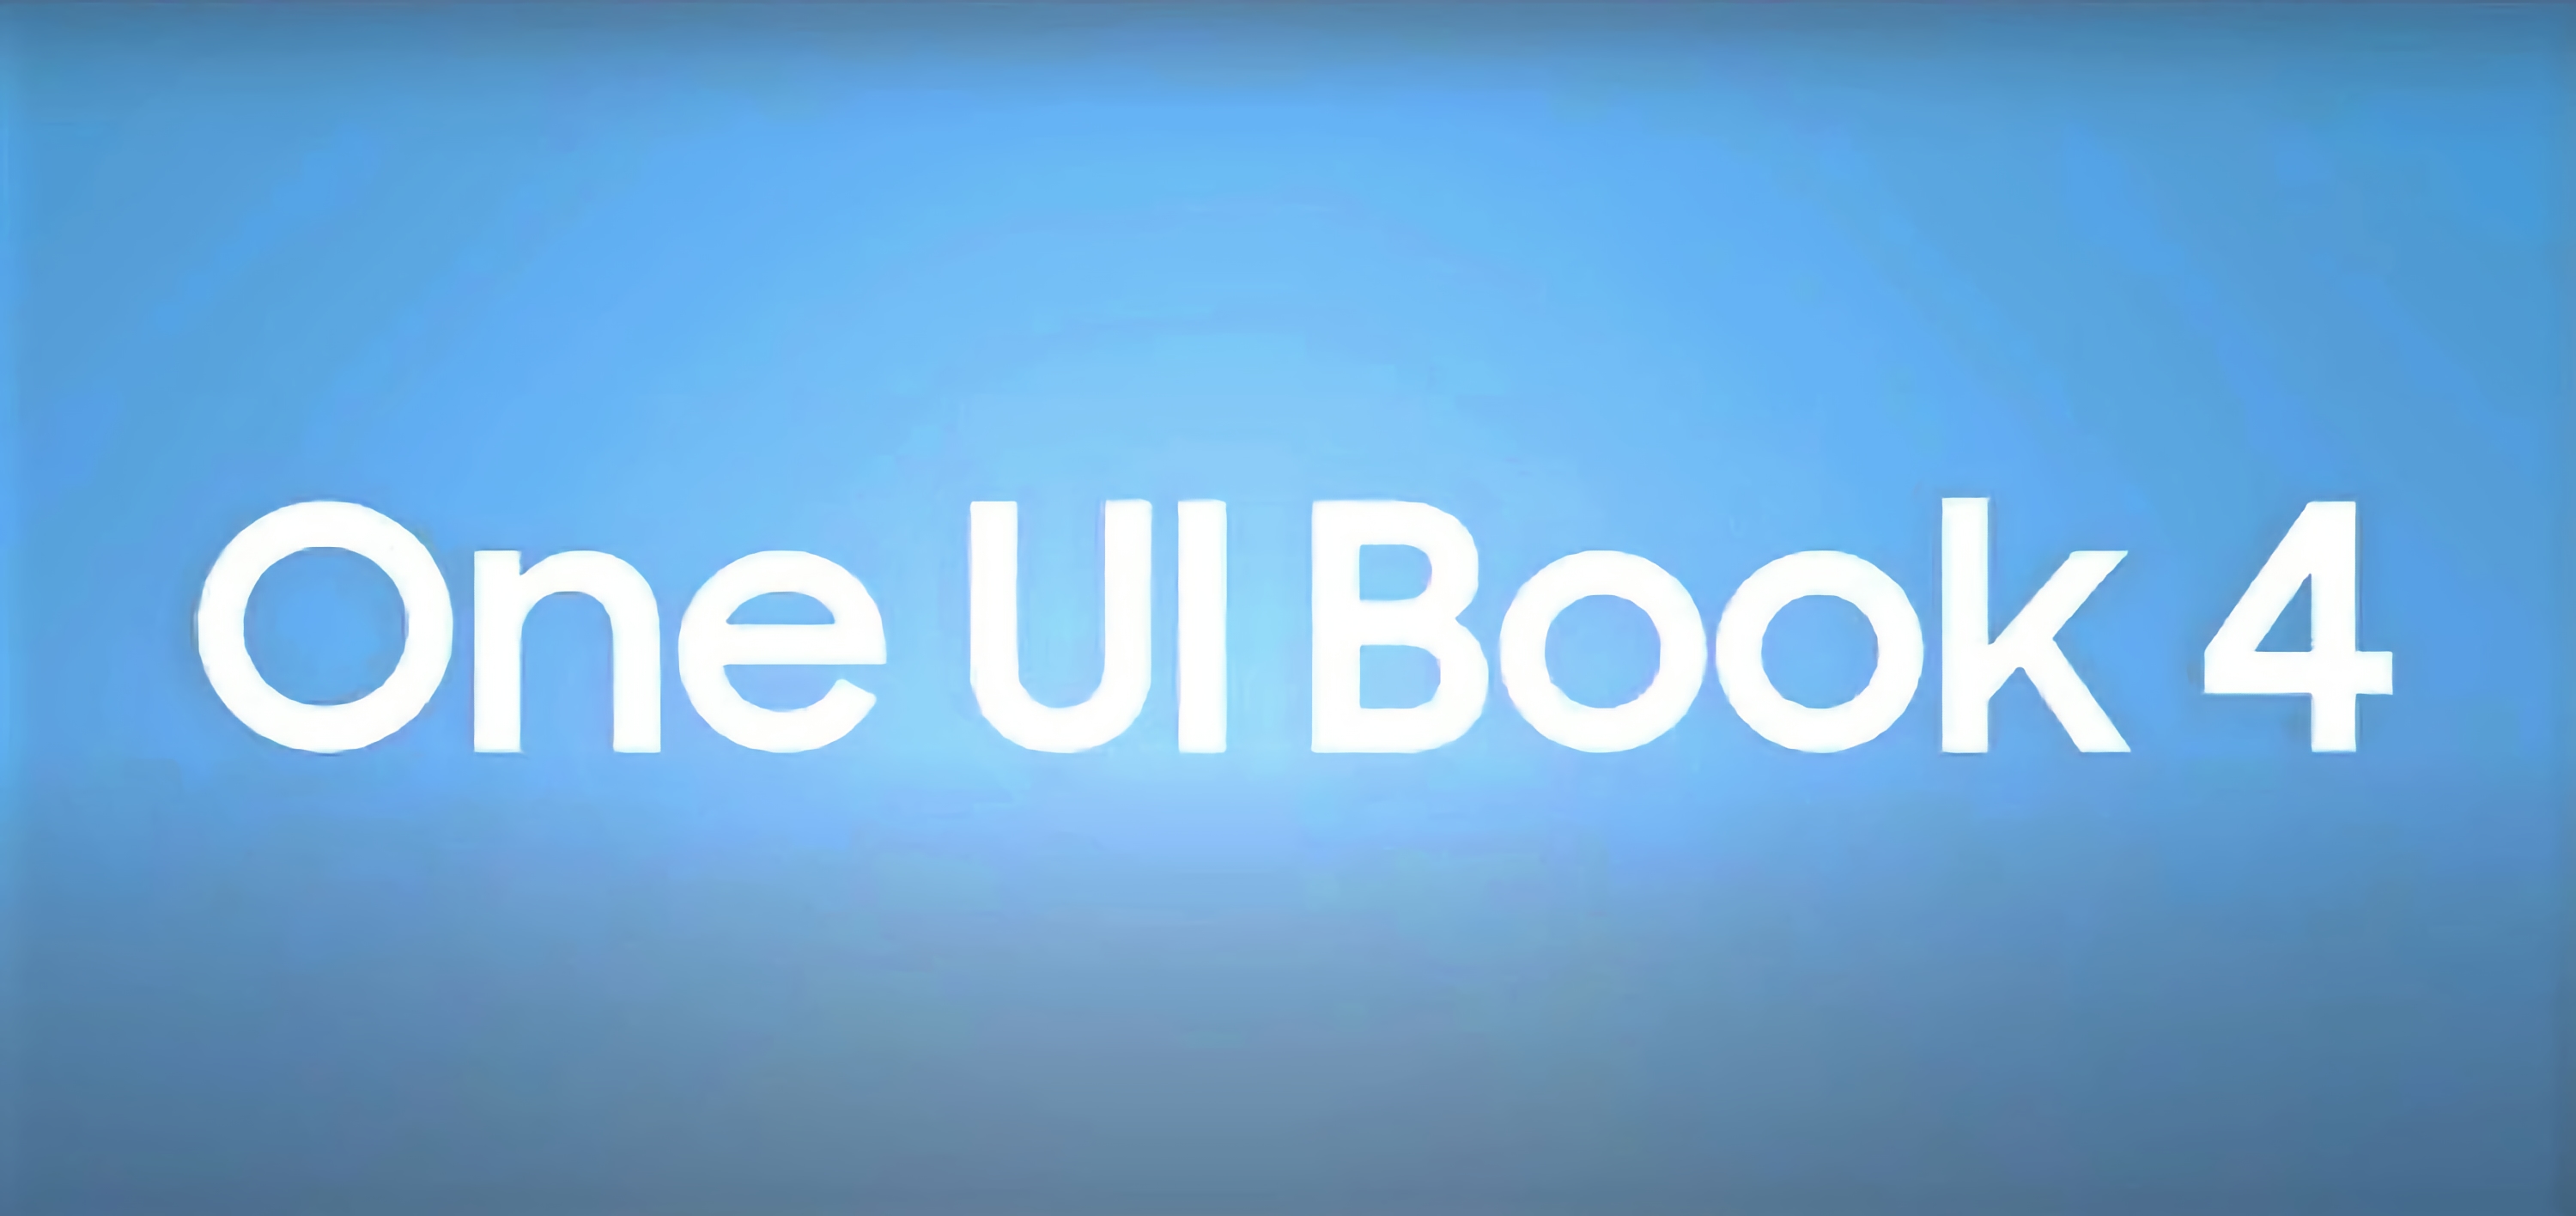 Samsung dévoile le One UI Book 4 : une coque de marque pour les ordinateurs portables Windows